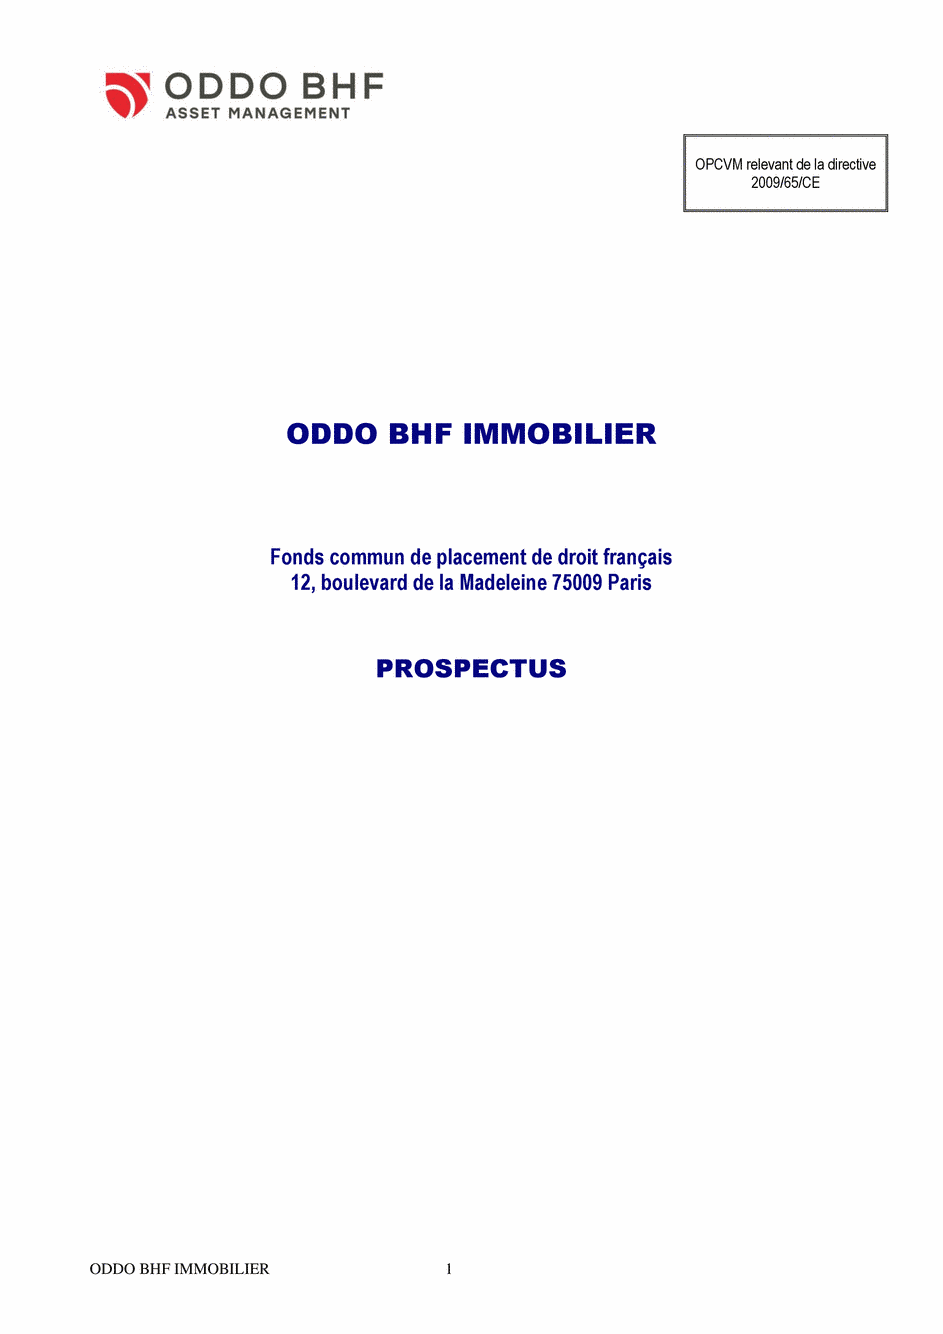 Prospectus ODDO BHF IMMOBILIER CI-EUR - 15/07/2020 - Français